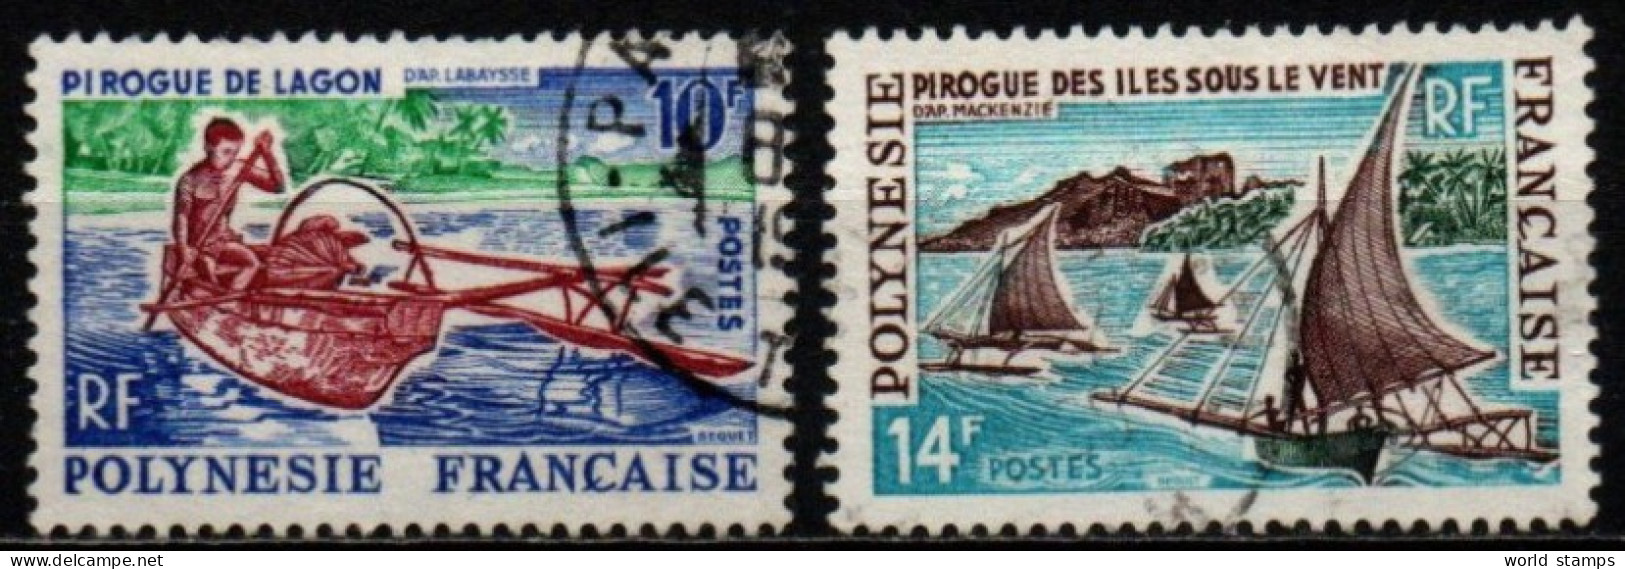 POLINESIE FR. 1966 O - Gebraucht